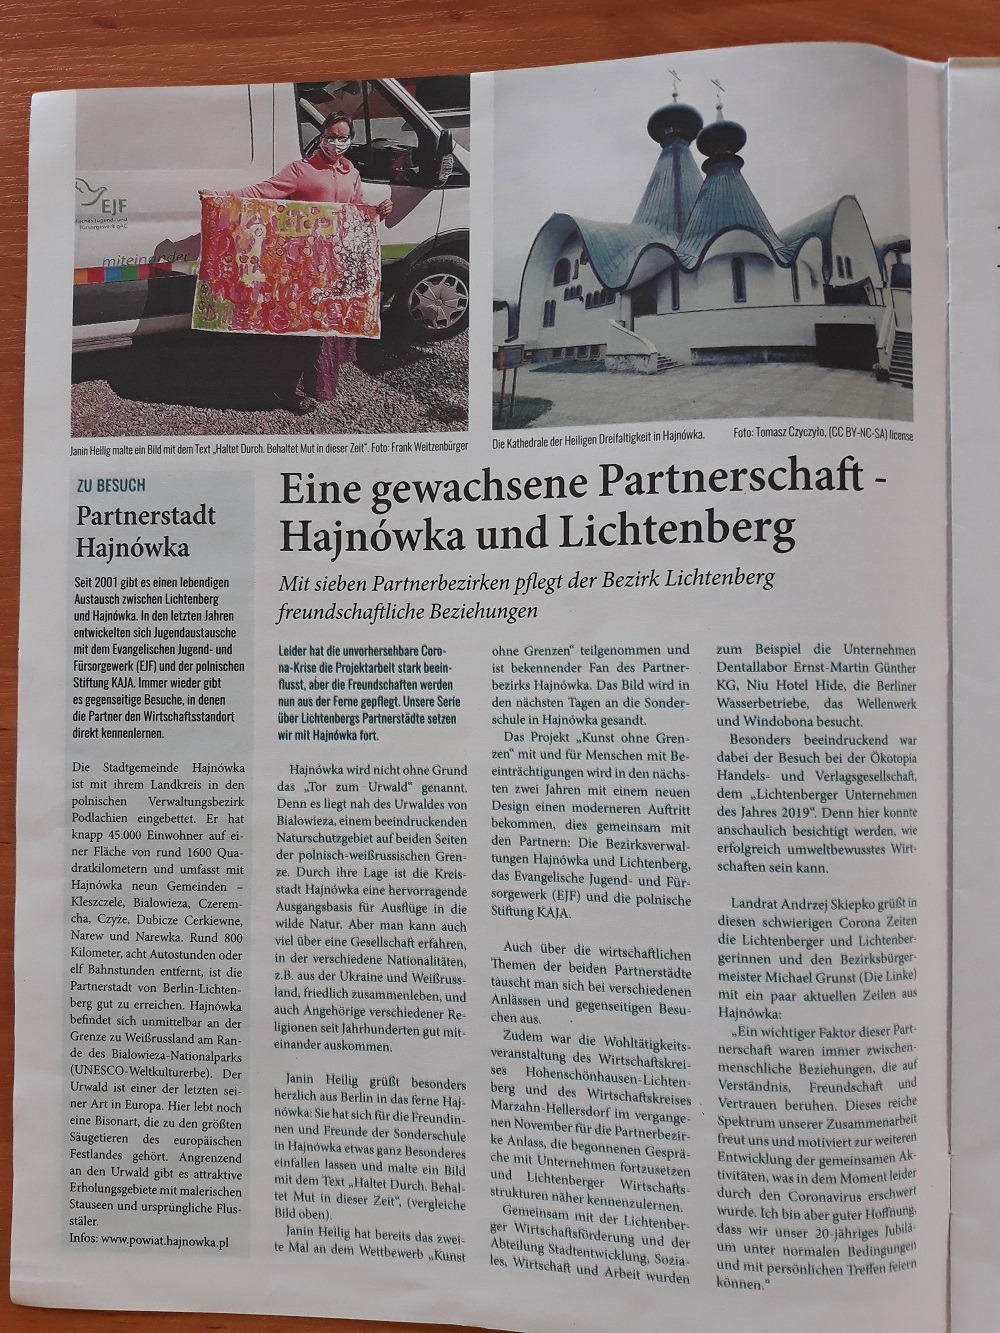 Artykuł w niemieckiej gazecie